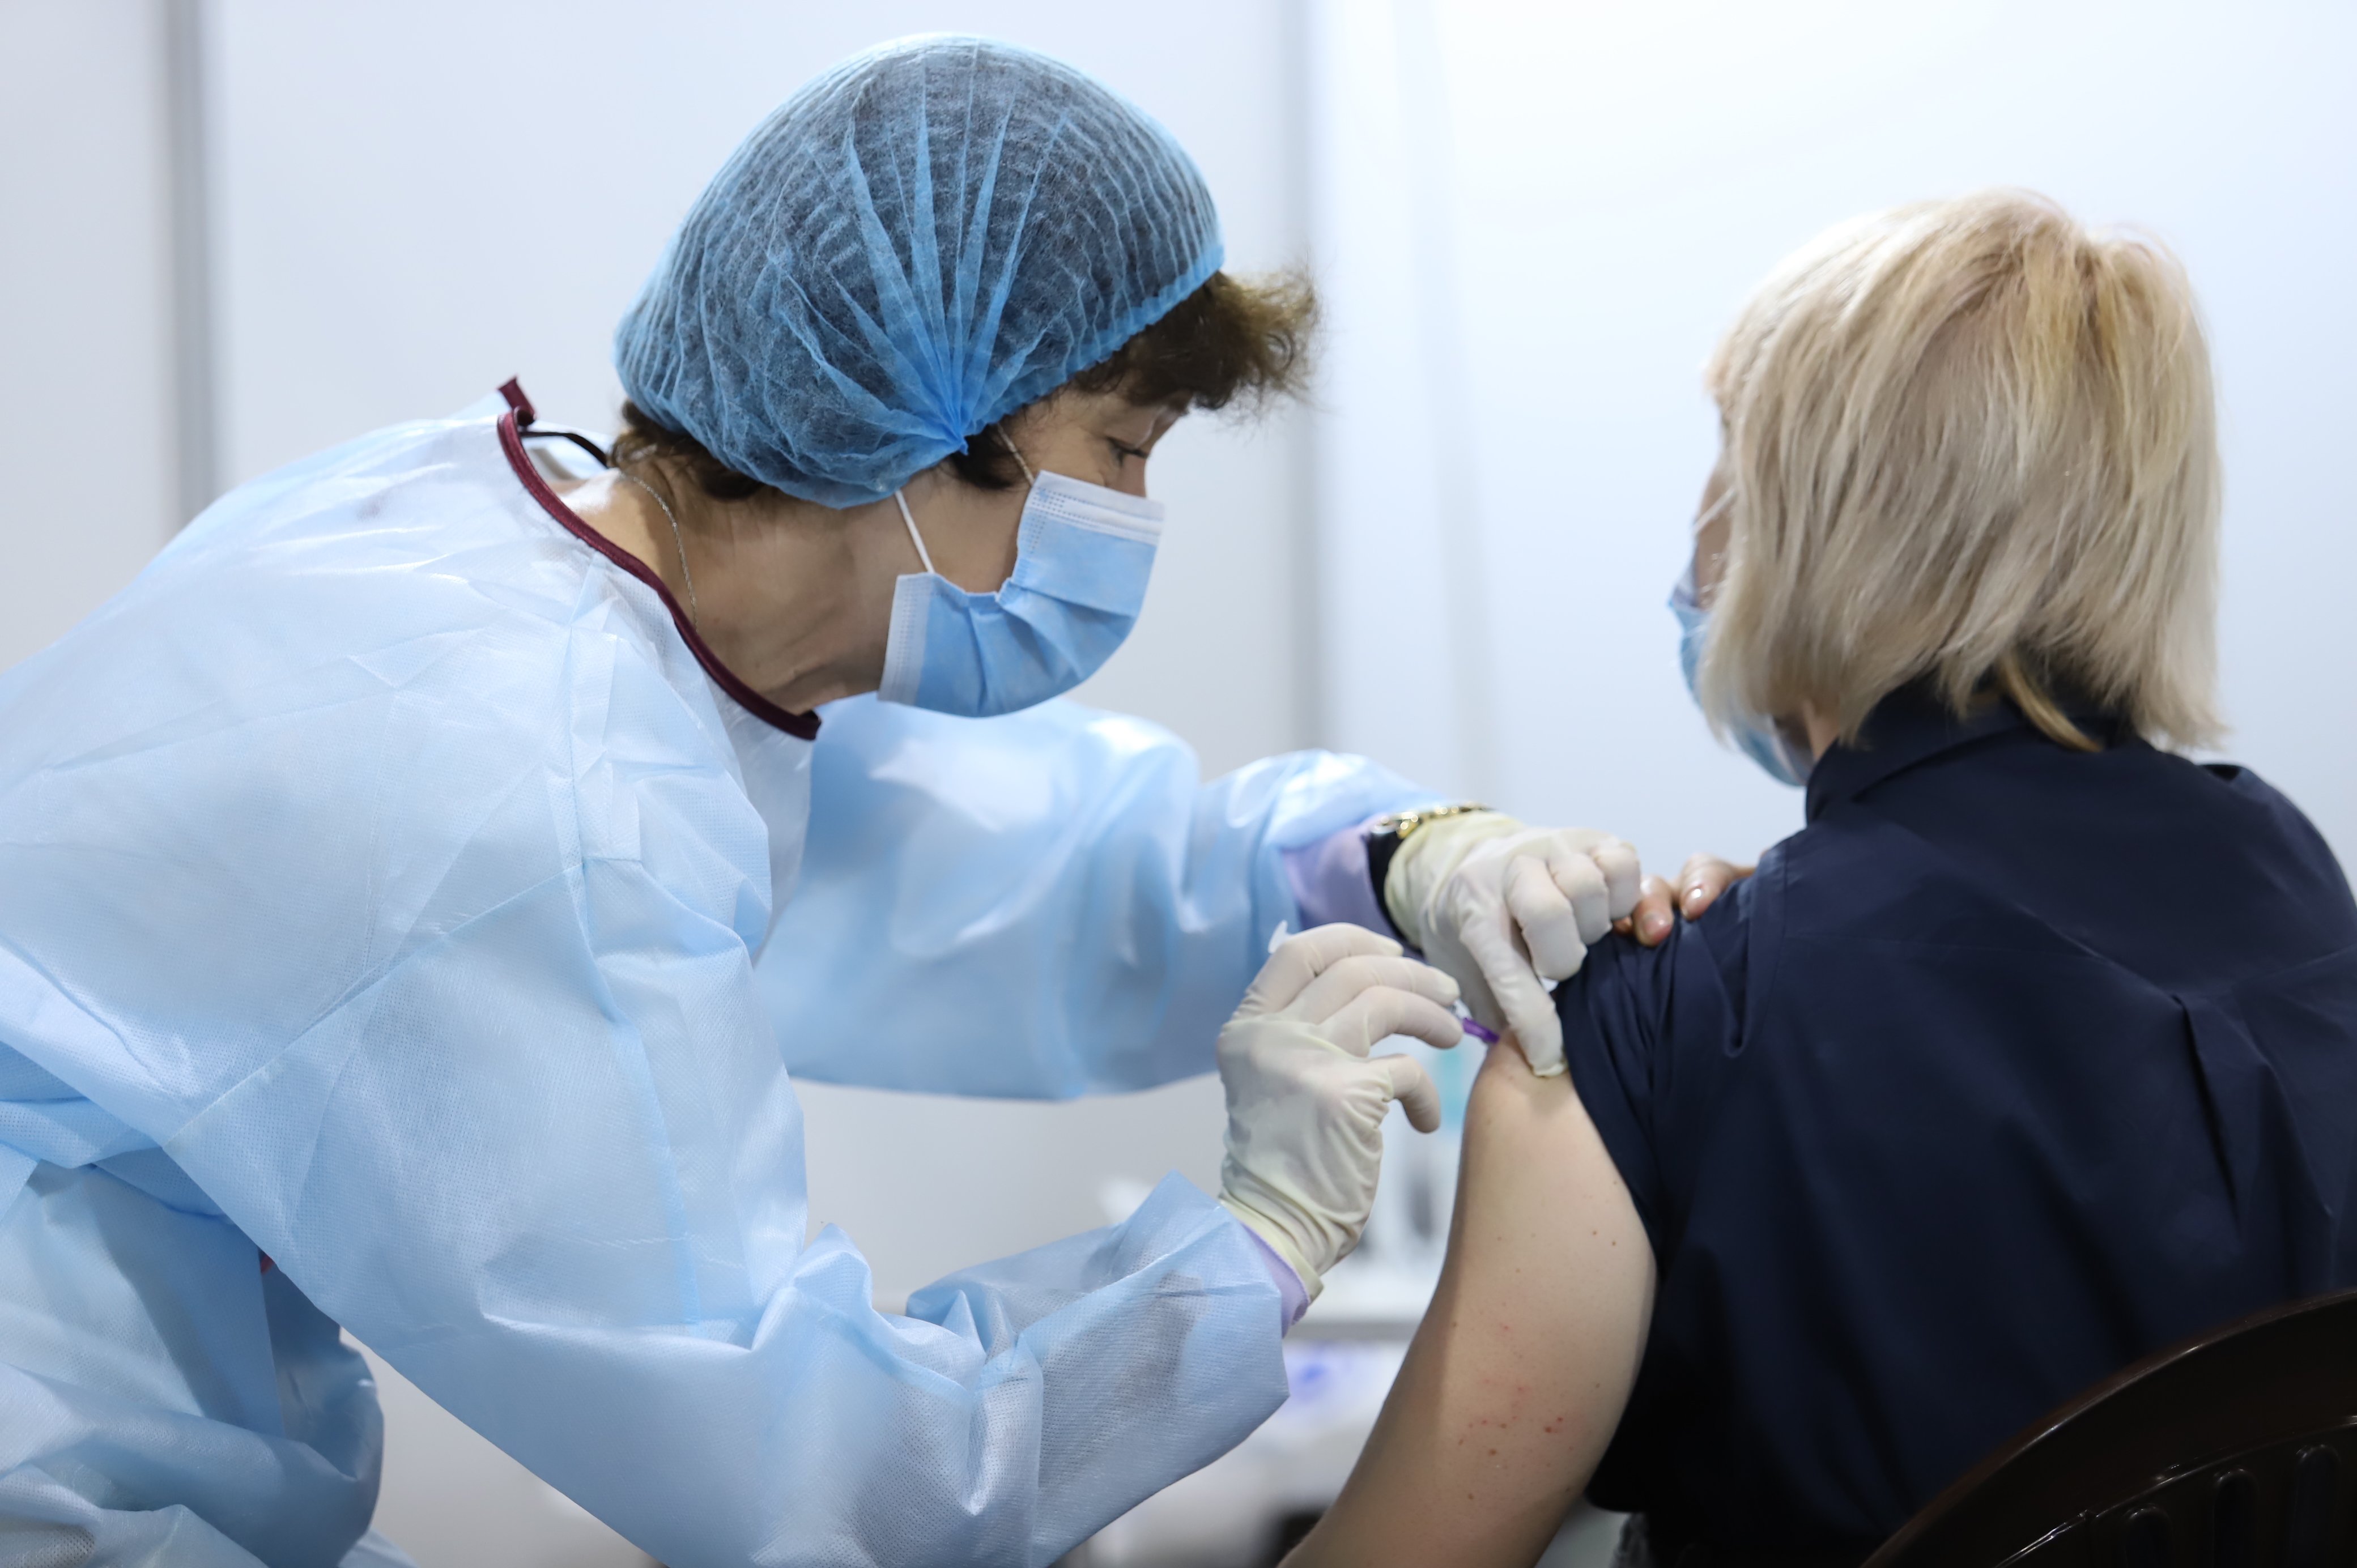 Центр вакцинации на столичной Левобережной будет работать с 30 июня по 4 июля